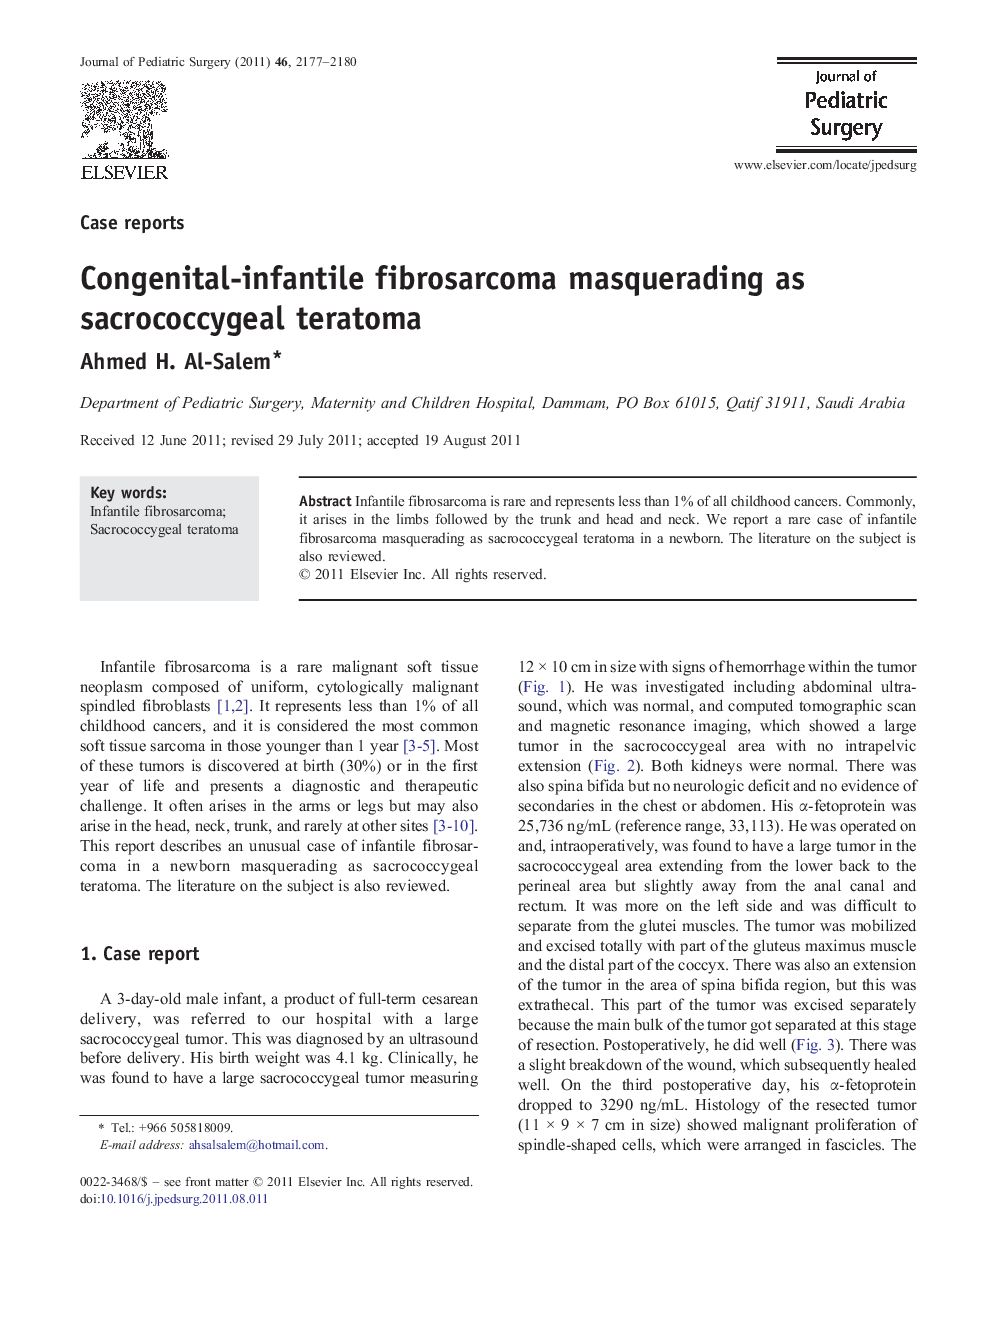 Congenital-infantile fibrosarcoma masquerading as sacrococcygeal teratoma